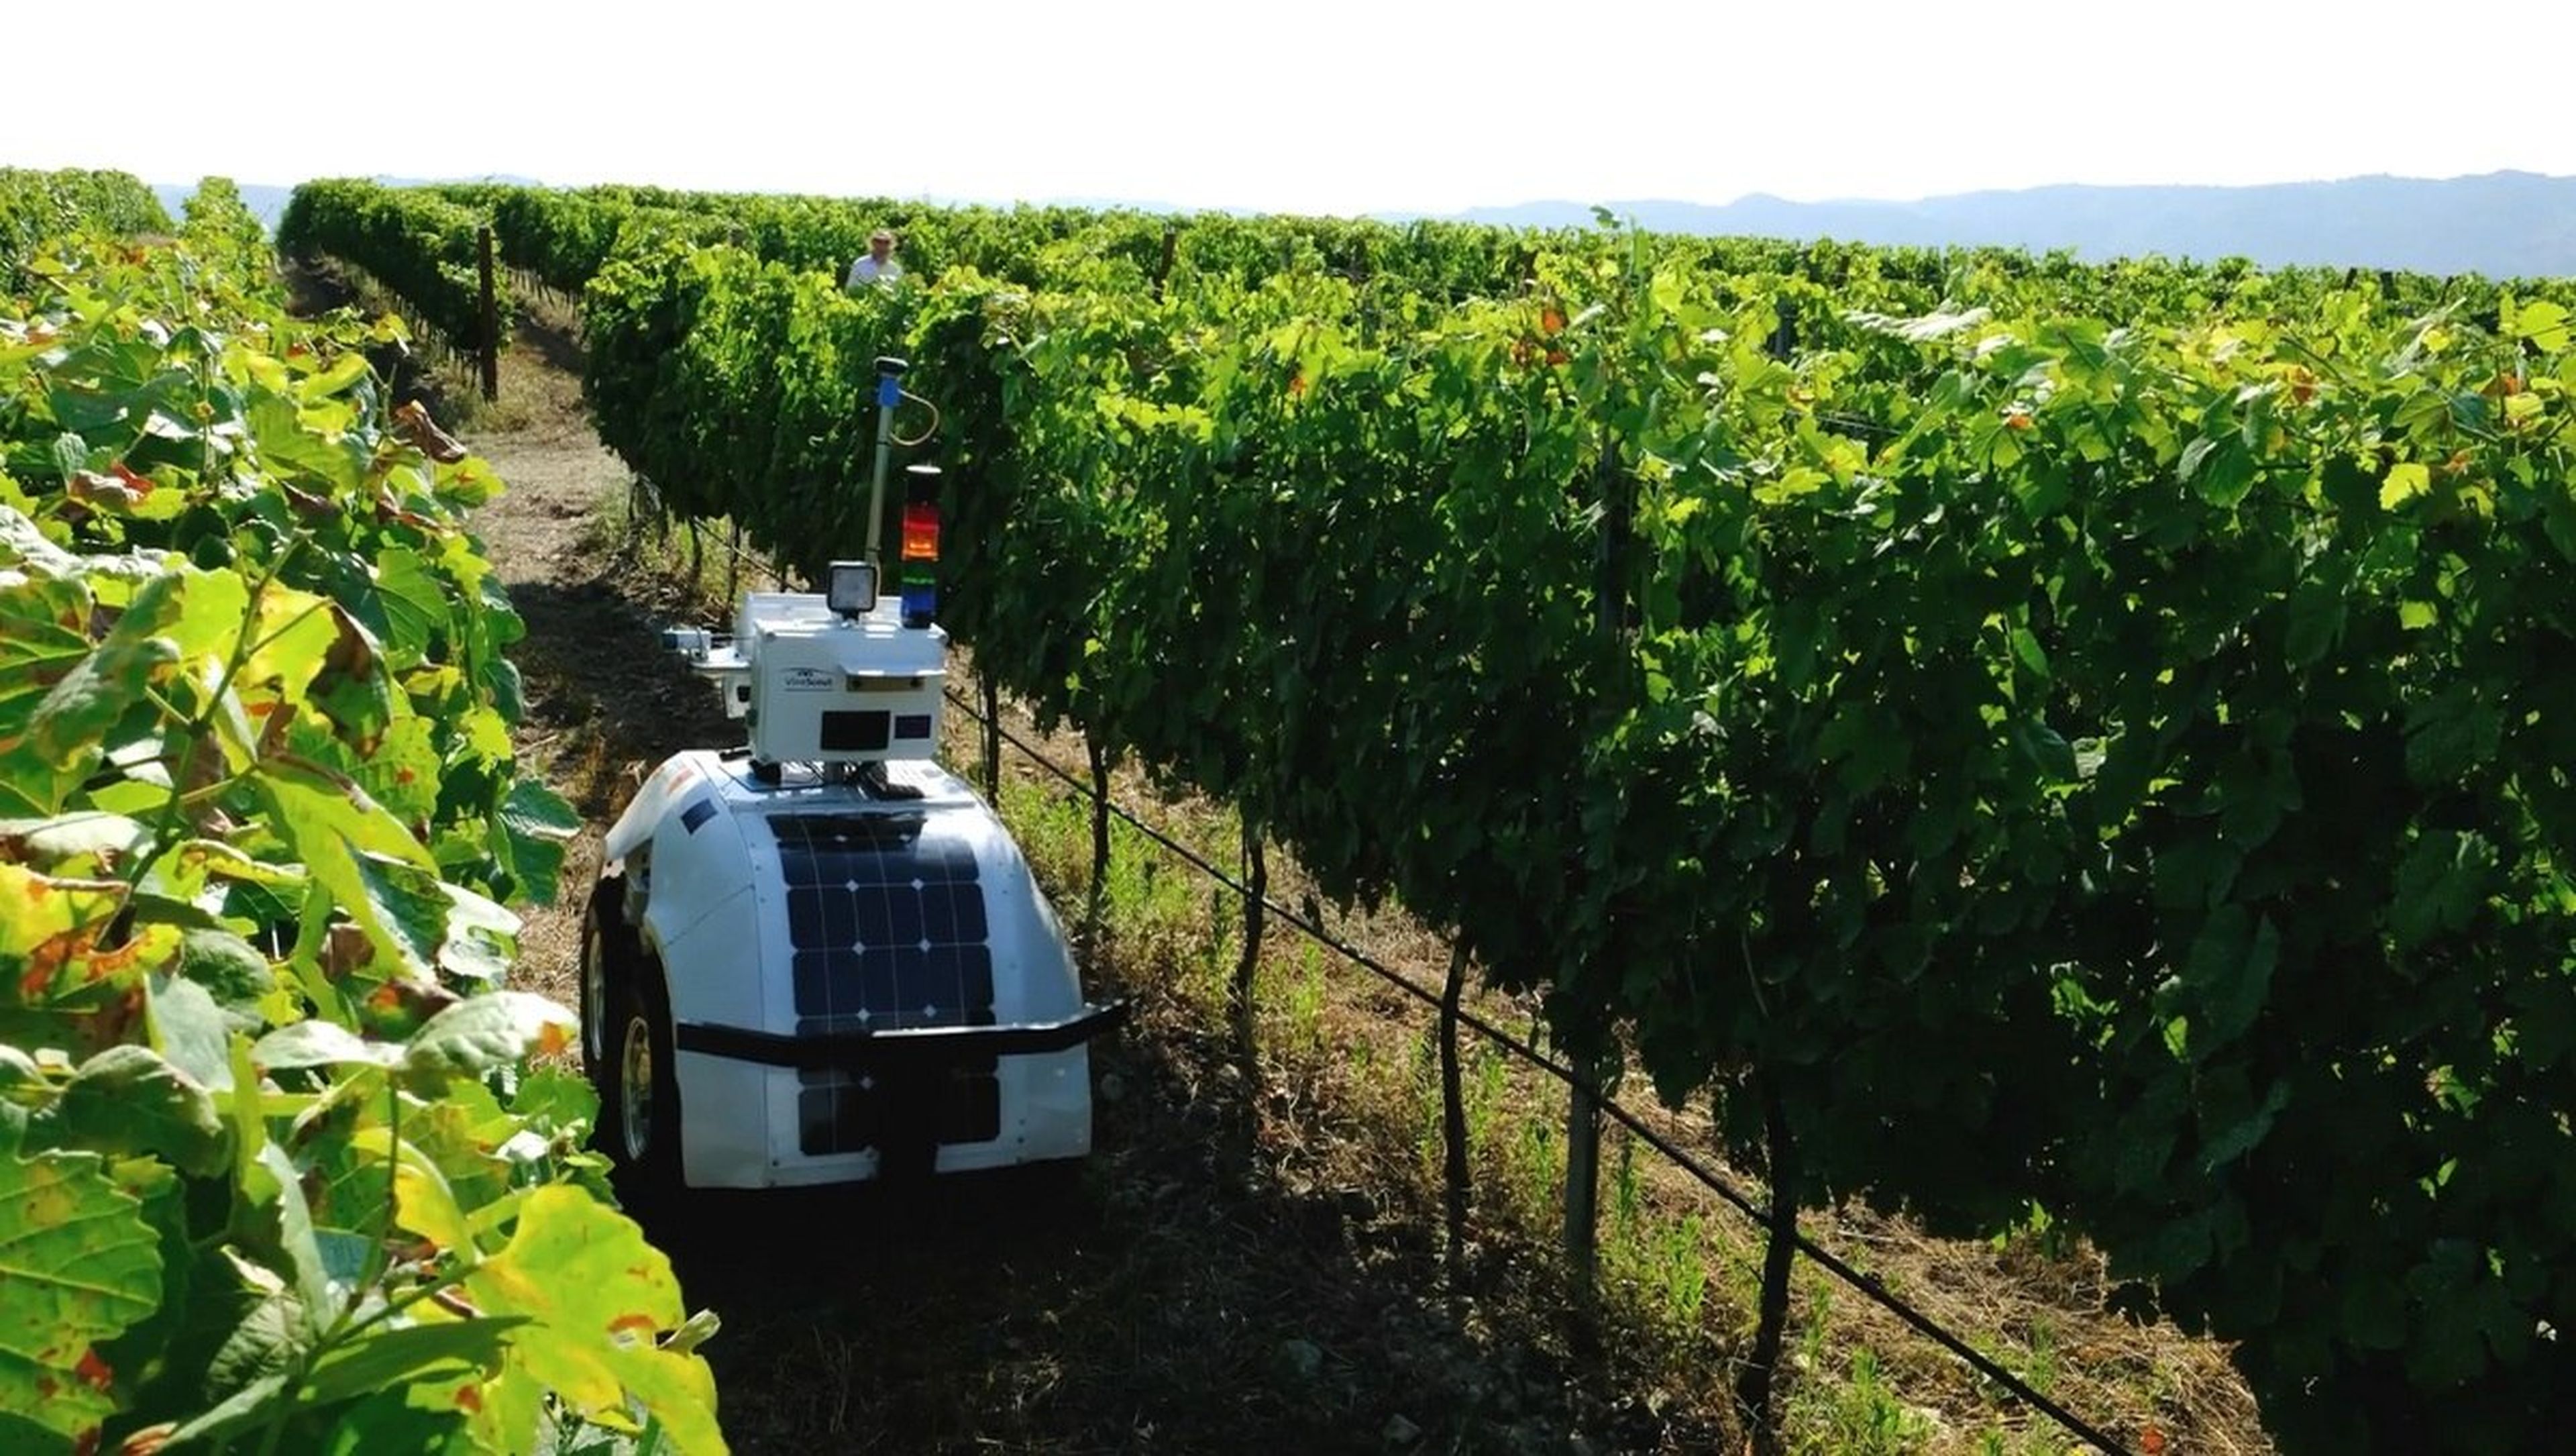 Este robot agricultor con inteligencia artificial cuida los viñedos